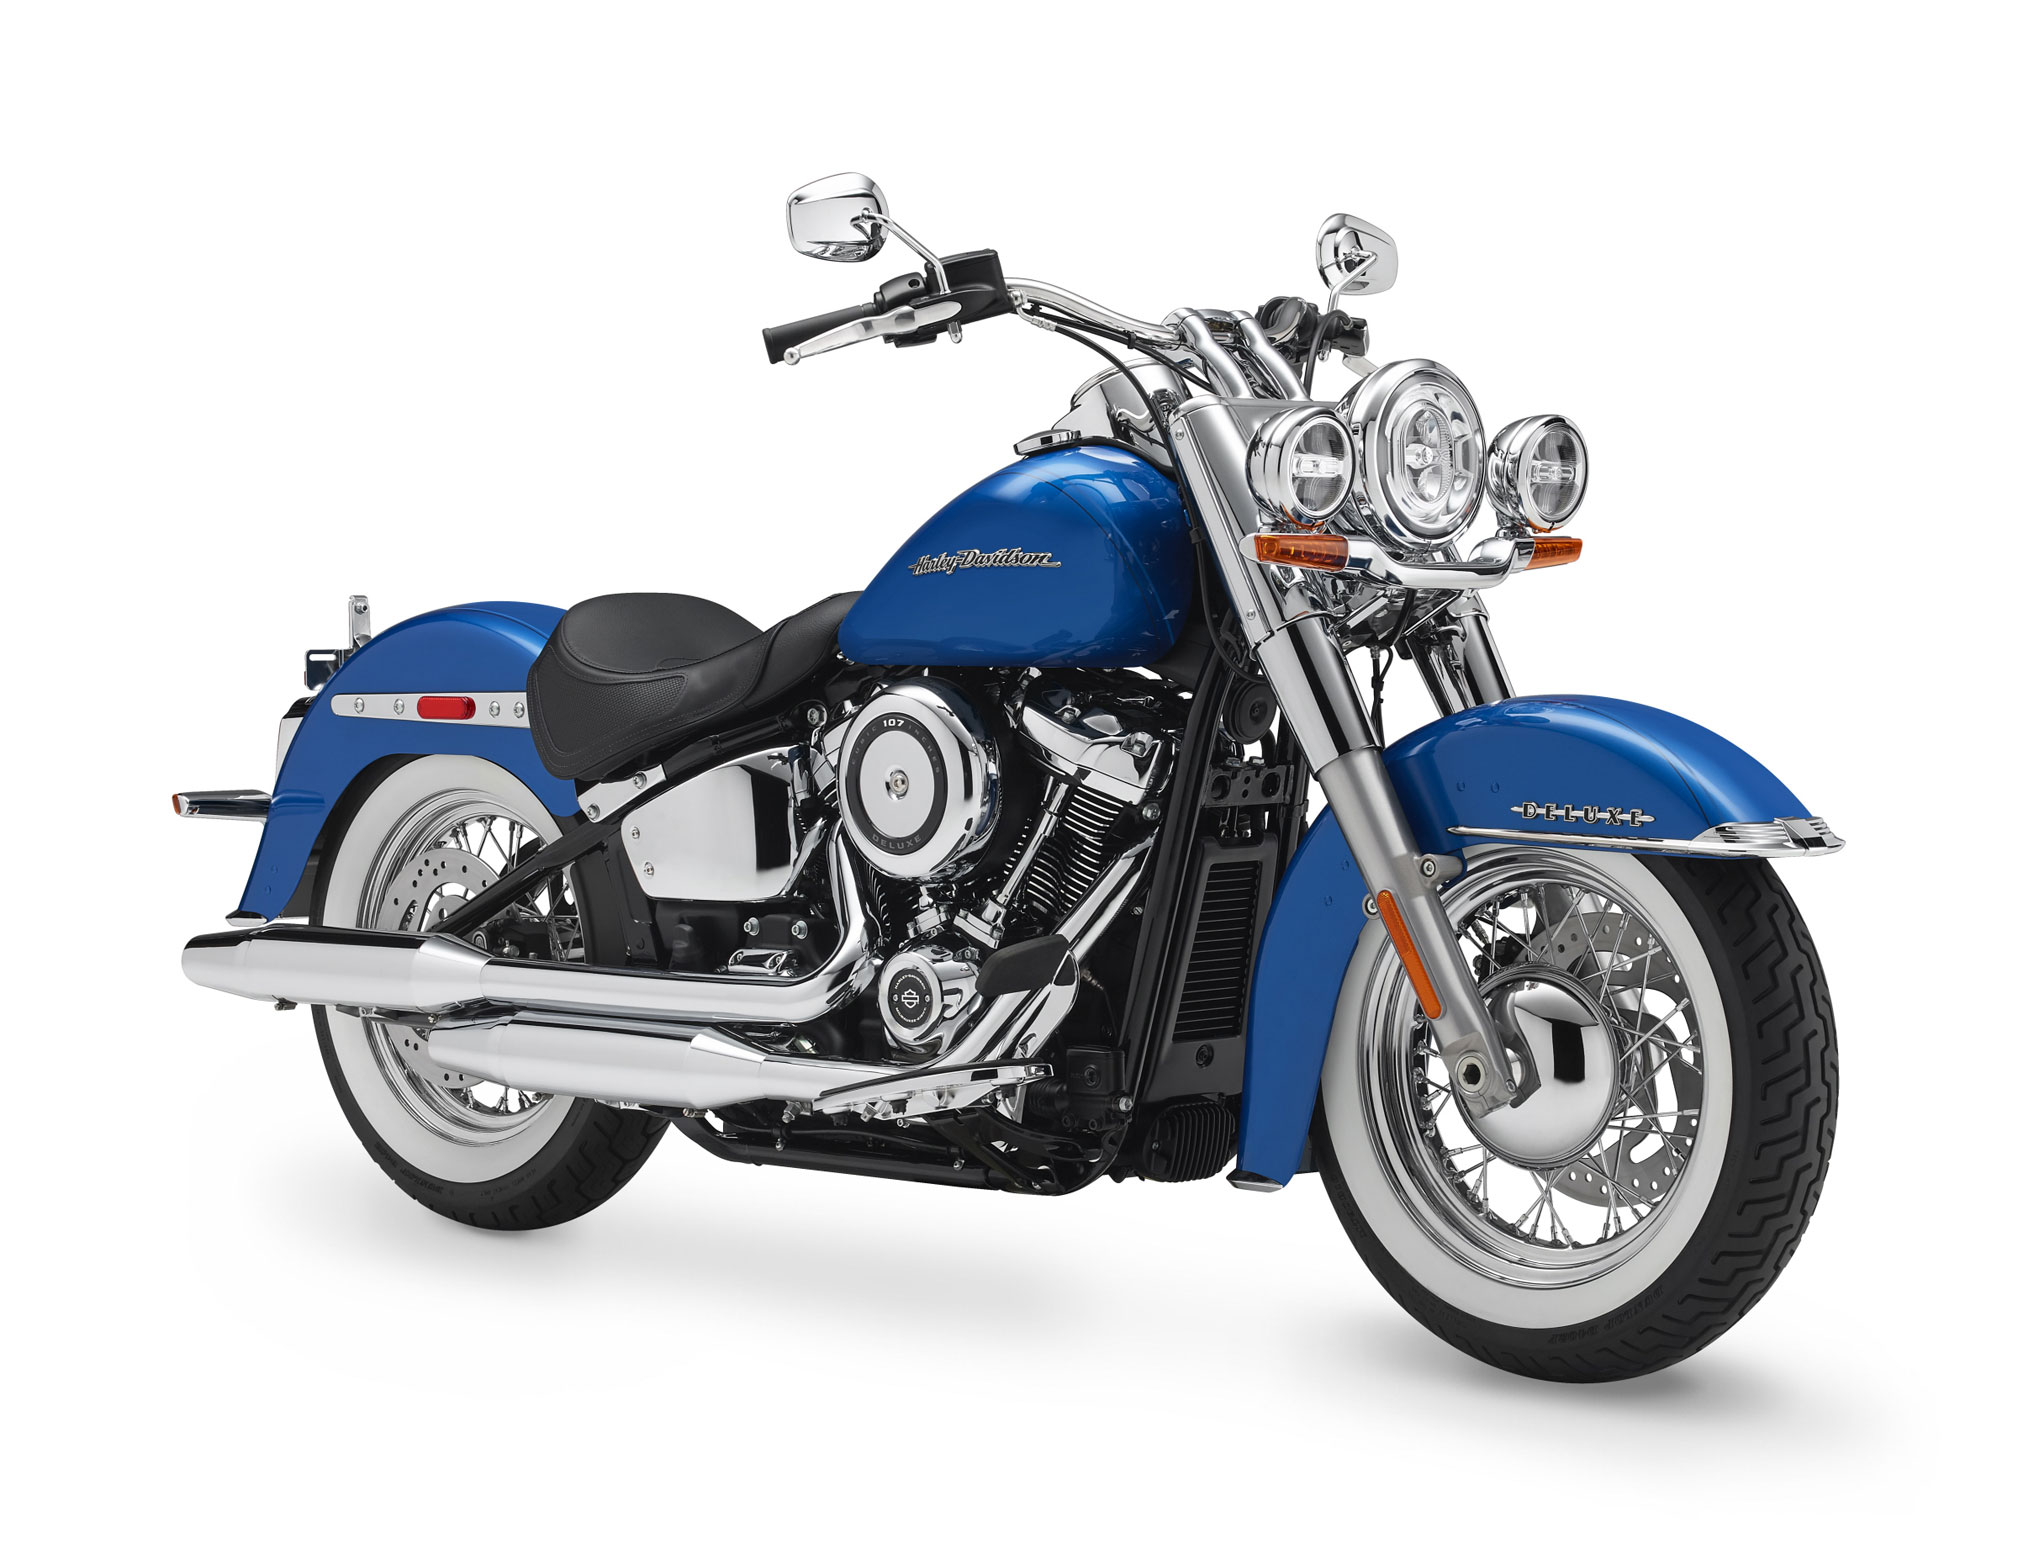 Télécharger des fonds d'écran Harley Davidson Softail Deluxe HD